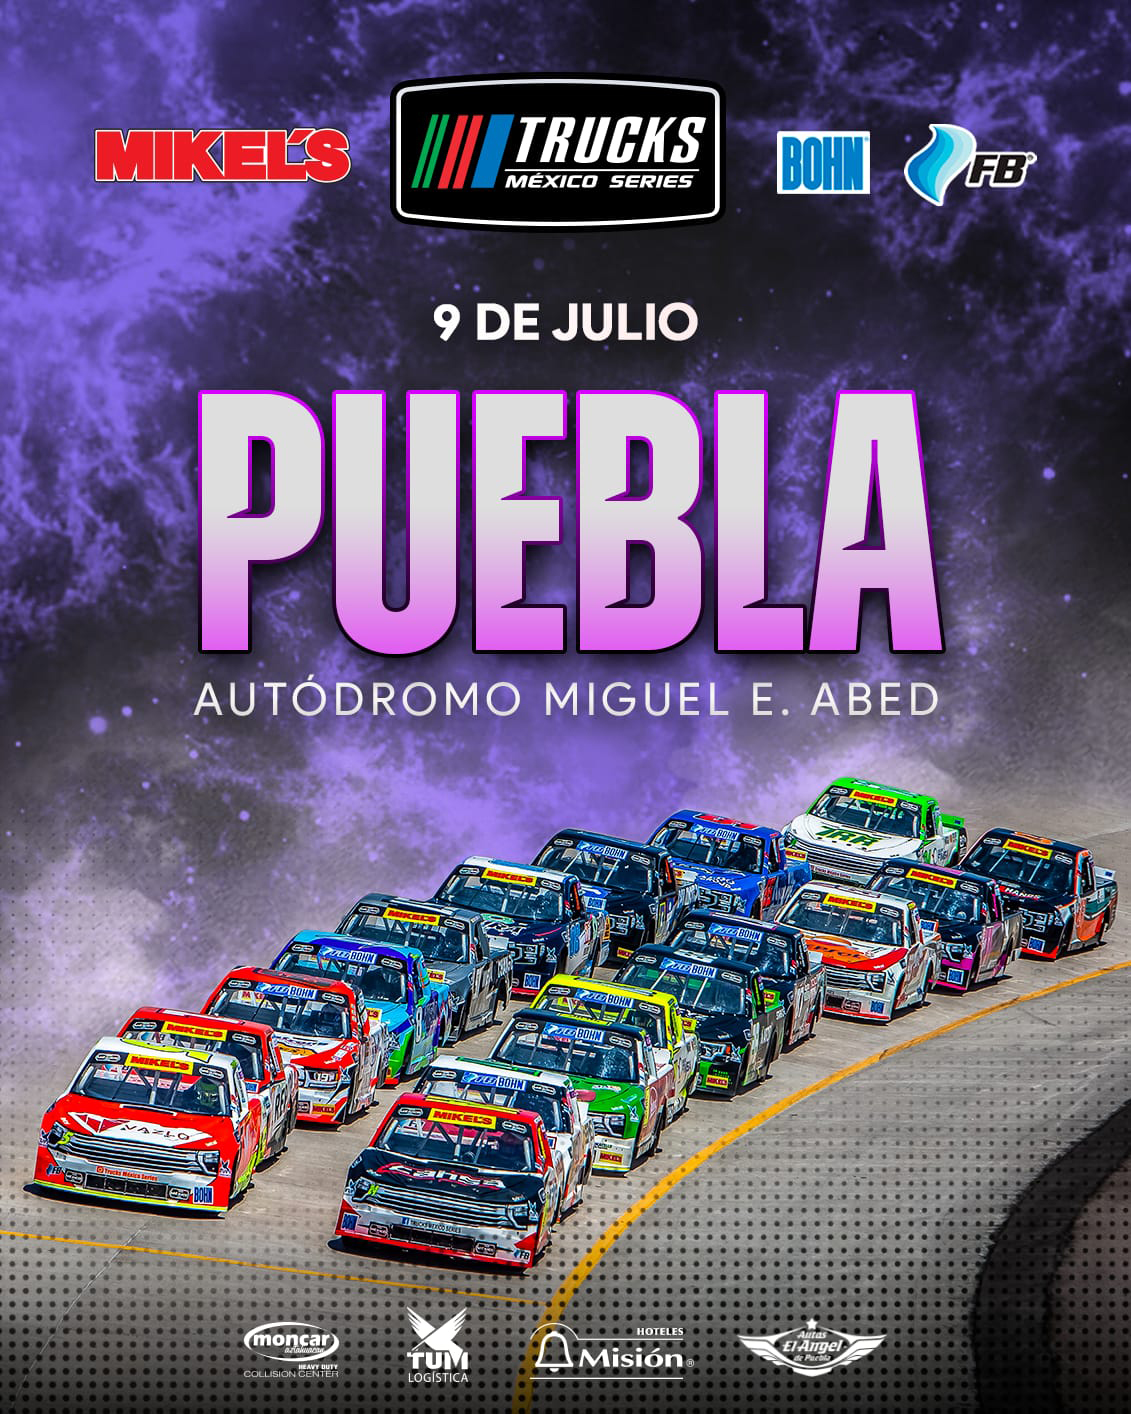 La 6ta fecha de Trucks México Series, se disputa en el Miguel E. Abed de Puebla